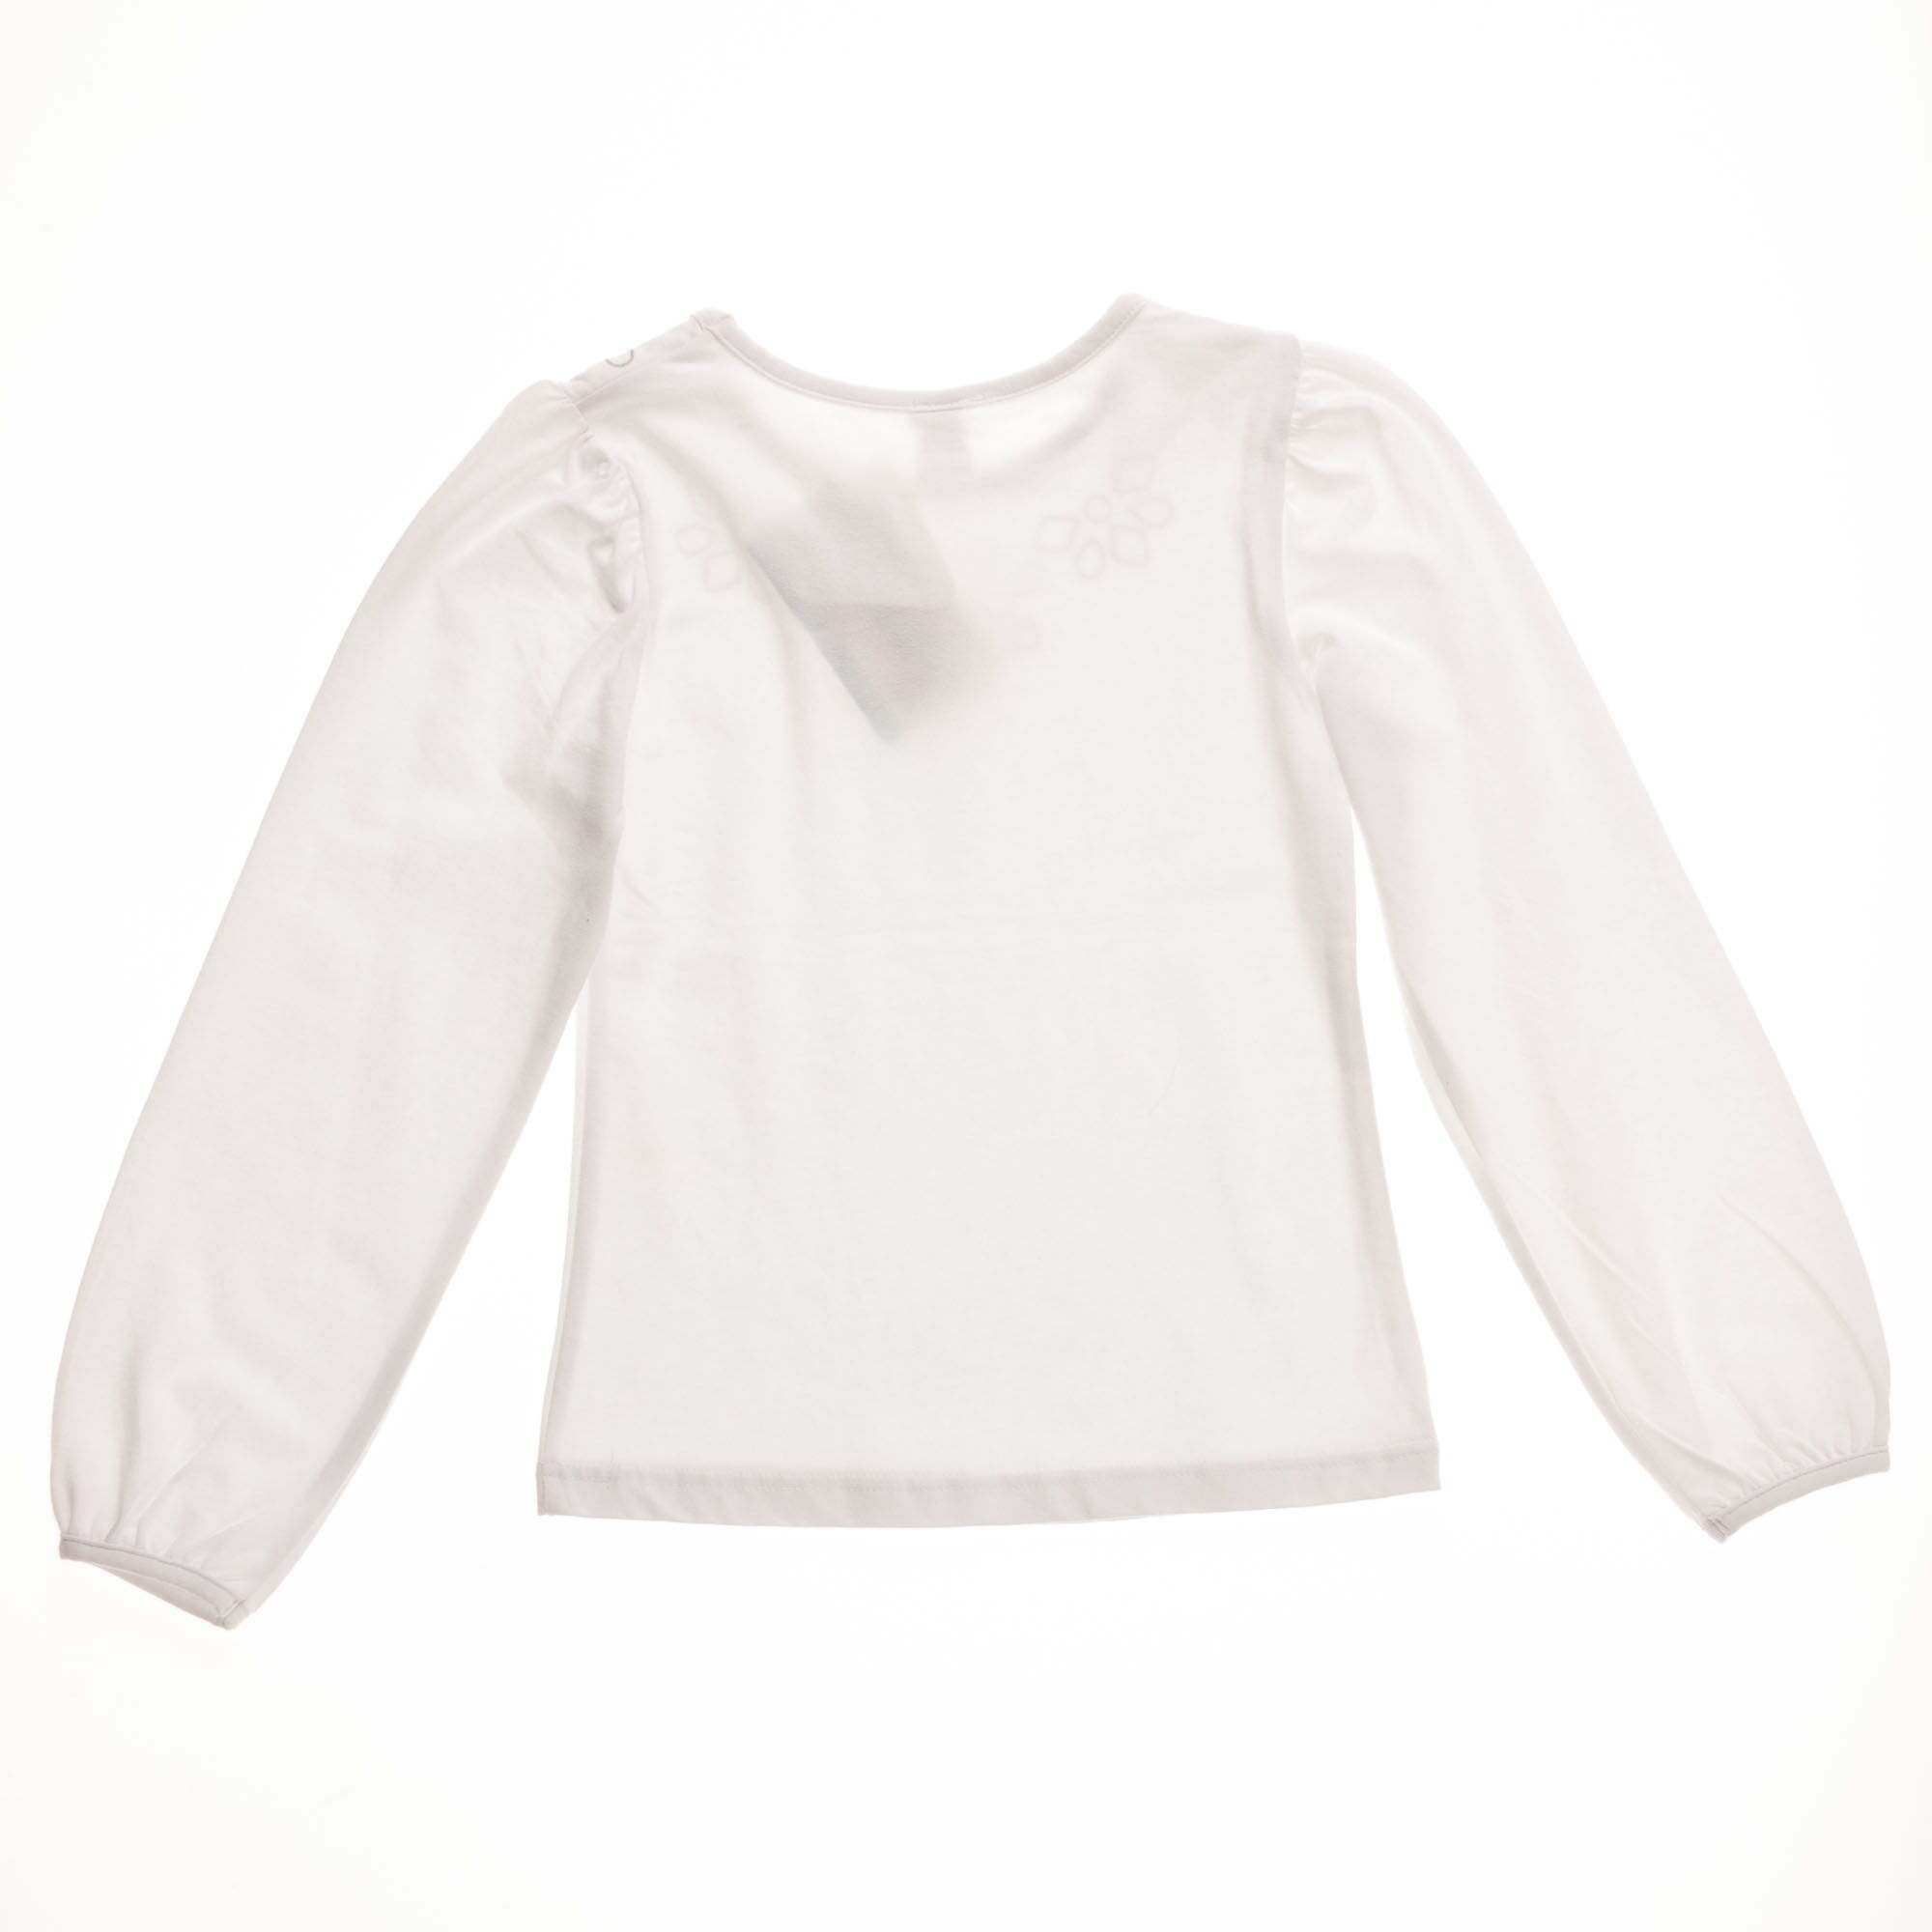 Блузка с длинным рукавом для девочки Valeri tex белая 1542-55-042 - фото